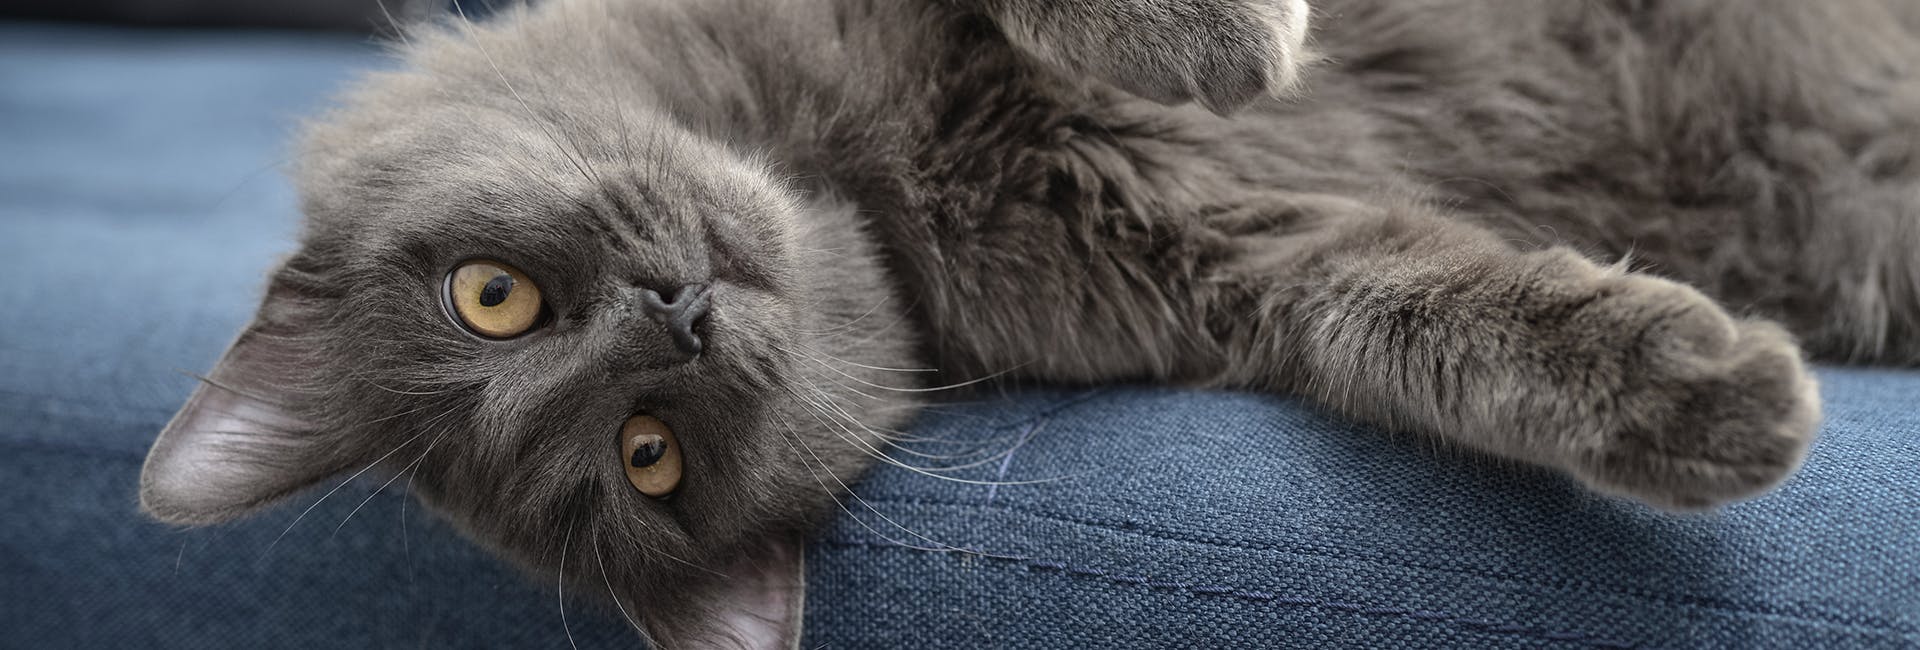 A grey fluffy cat scrawled across a blue sofa